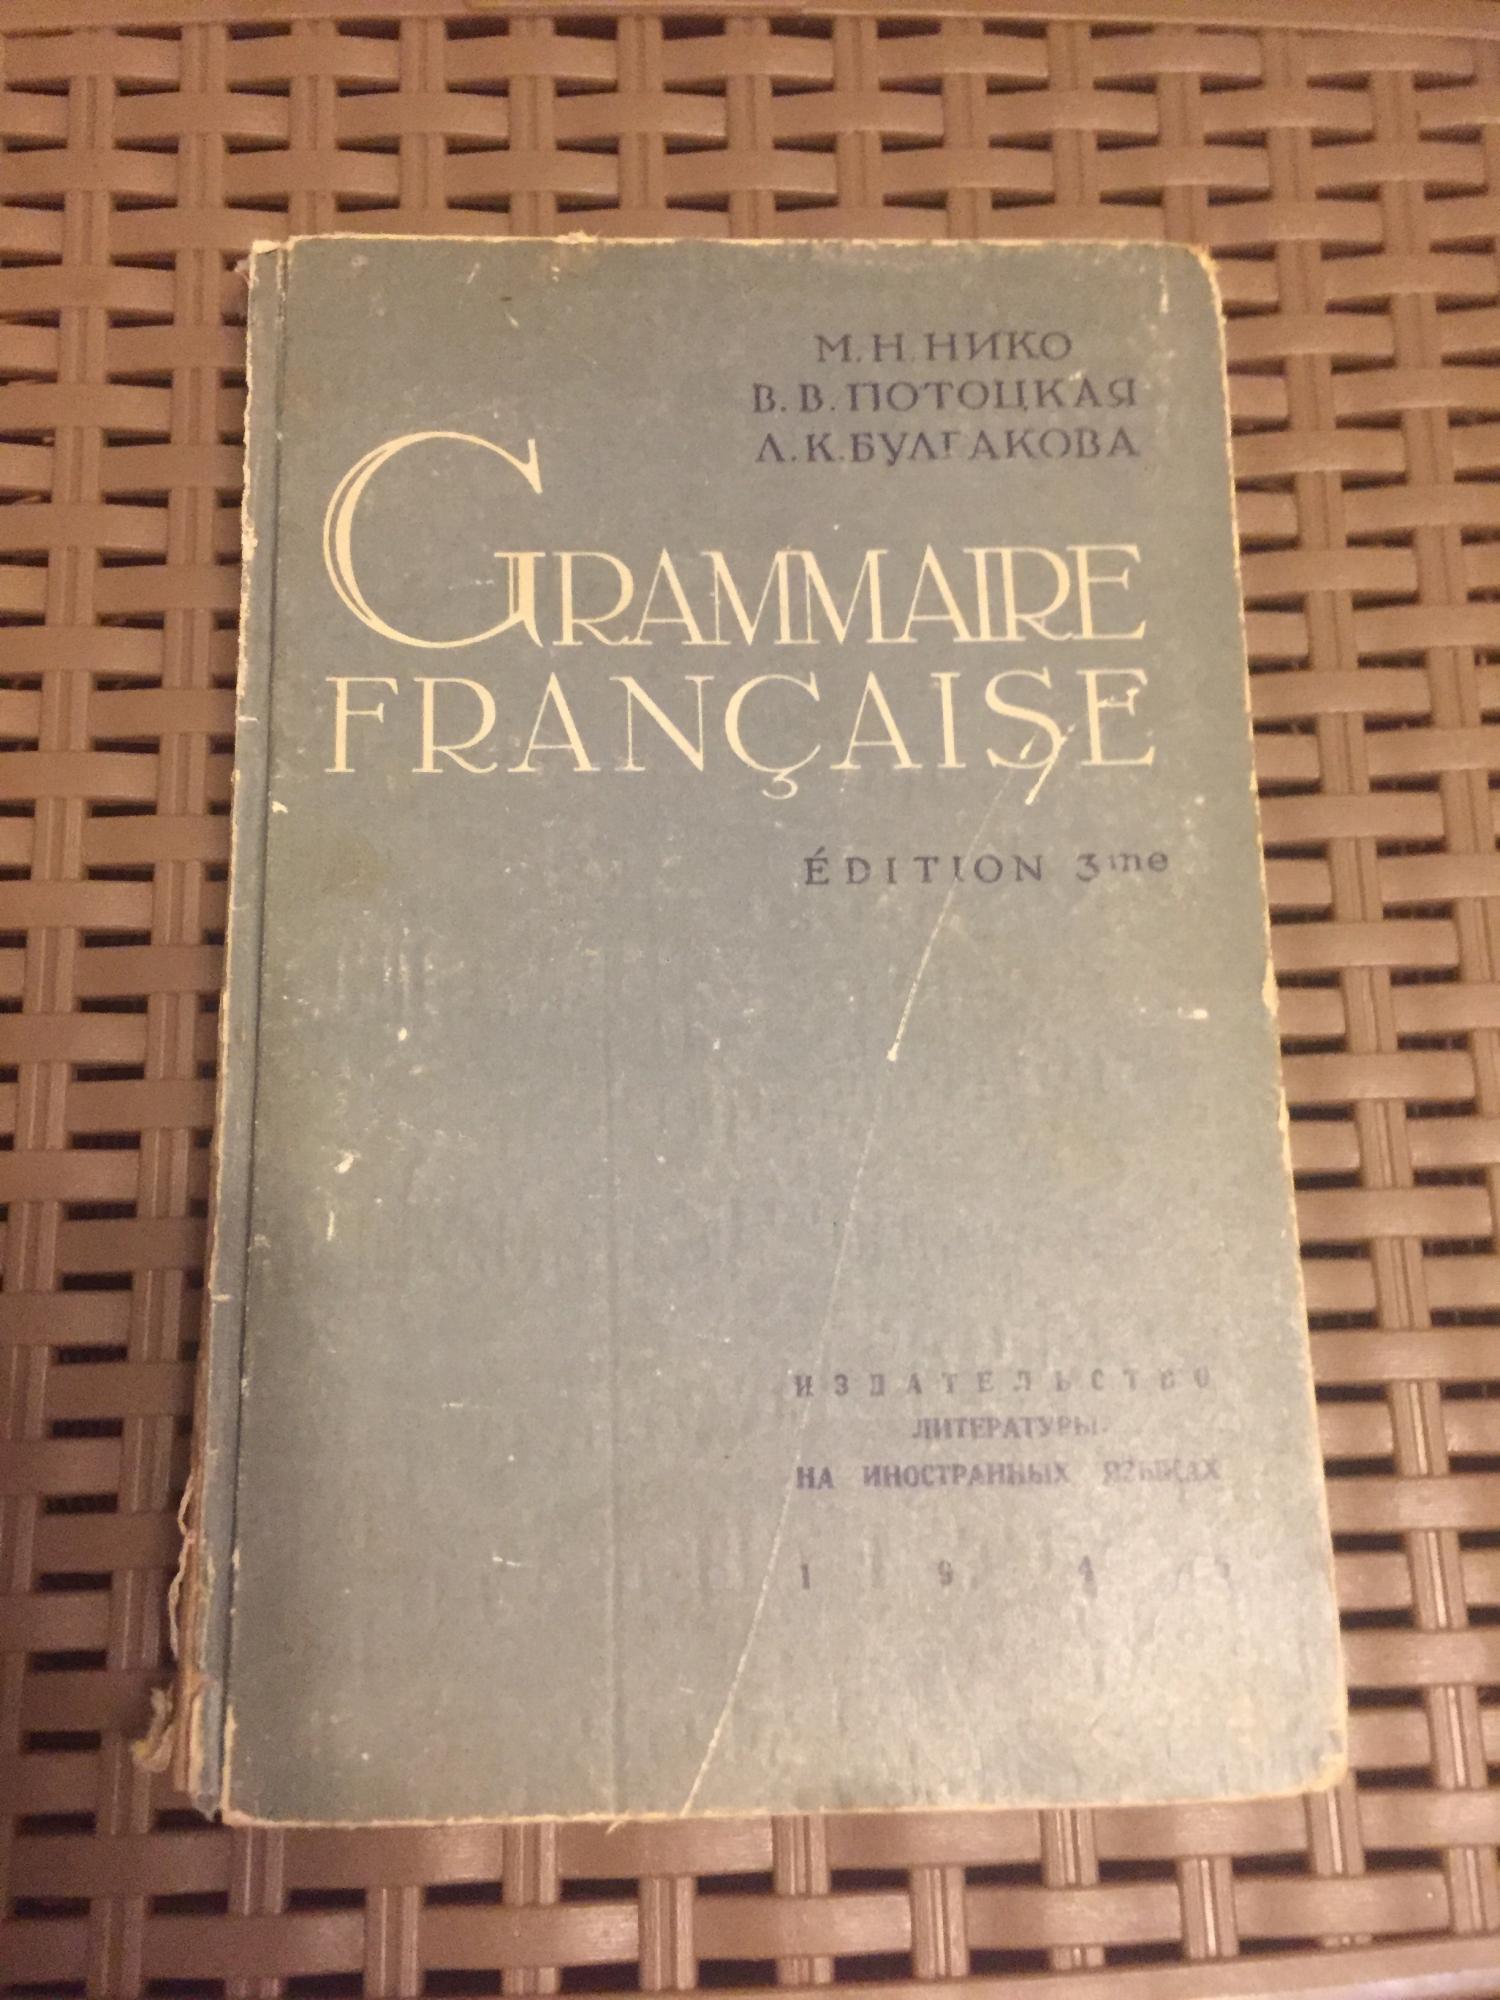 Книга « Грамматика французского языка» 1946г в Москве 89771824945 купить 1